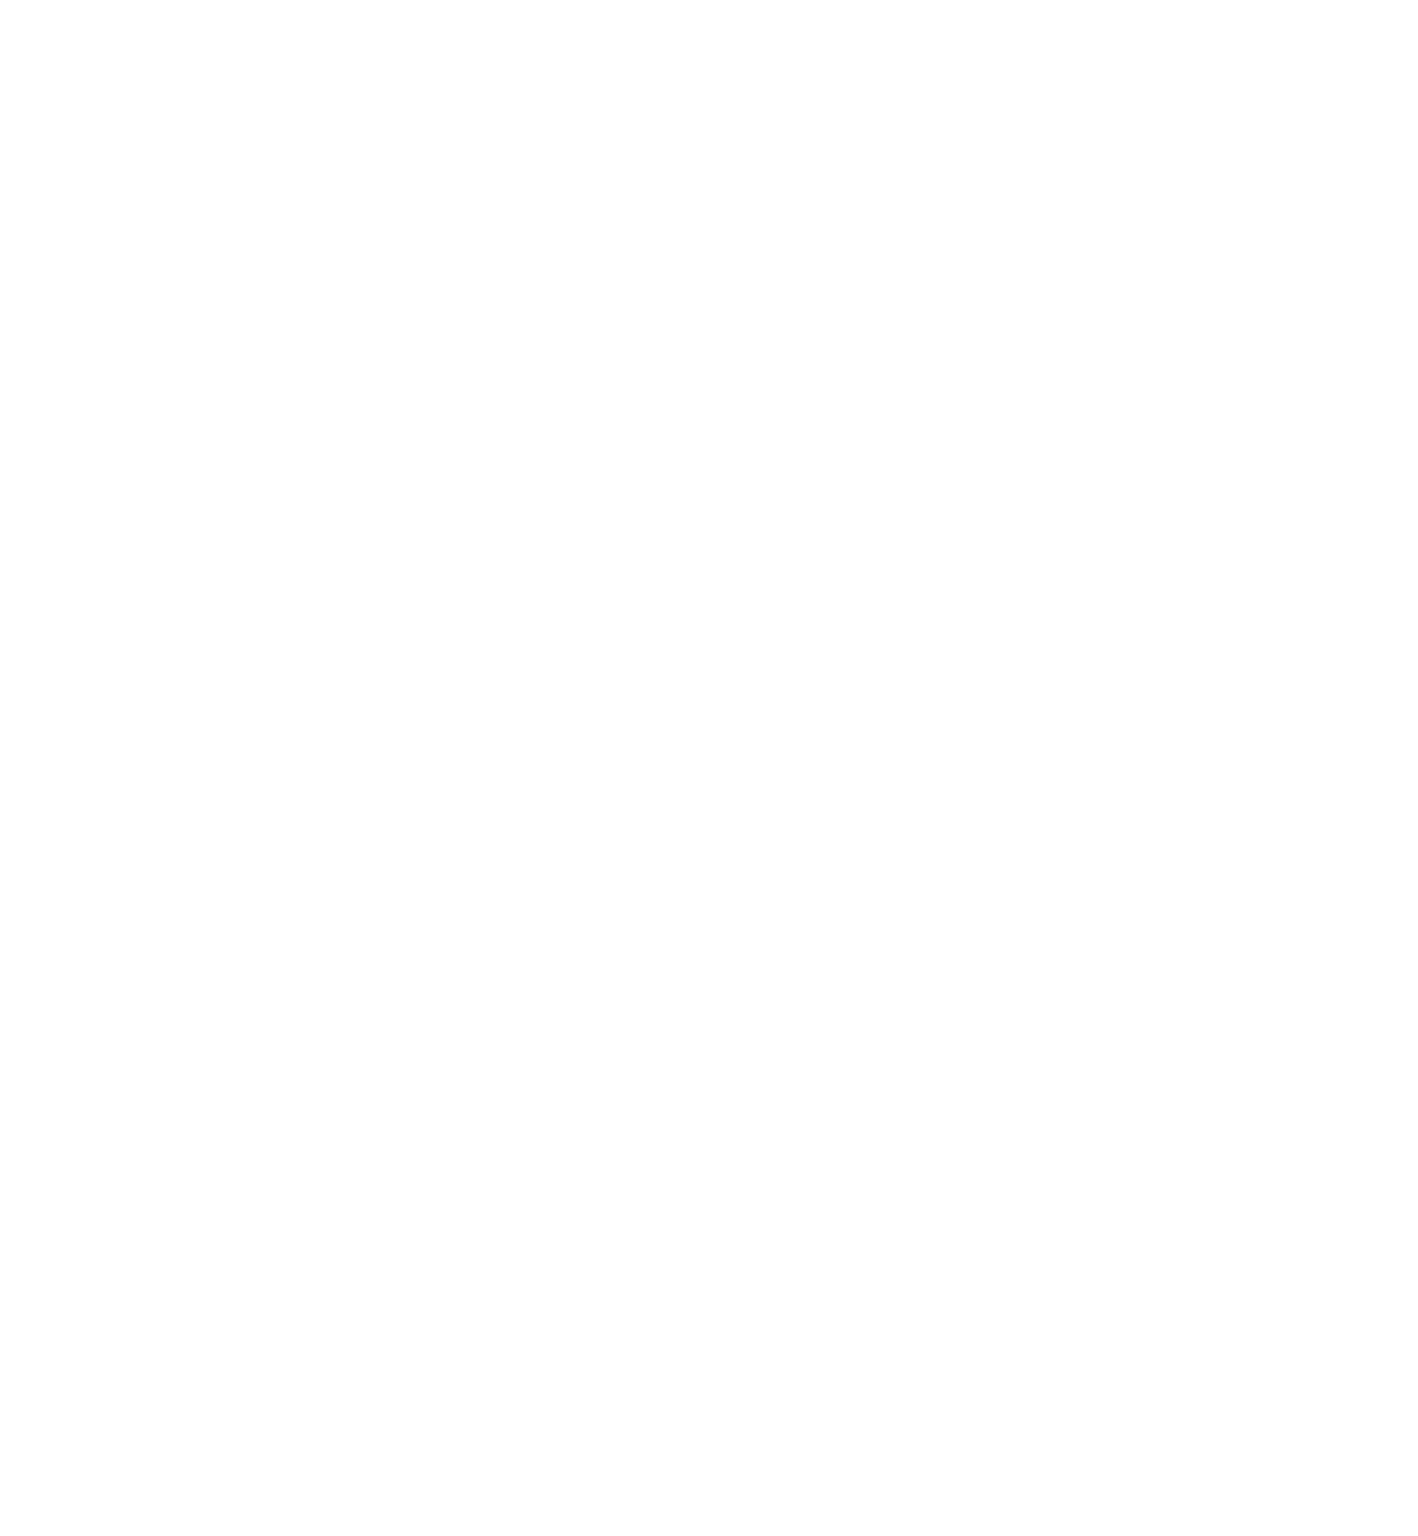 Vitesco Technologies Group logo pour fonds sombres (PNG transparent)